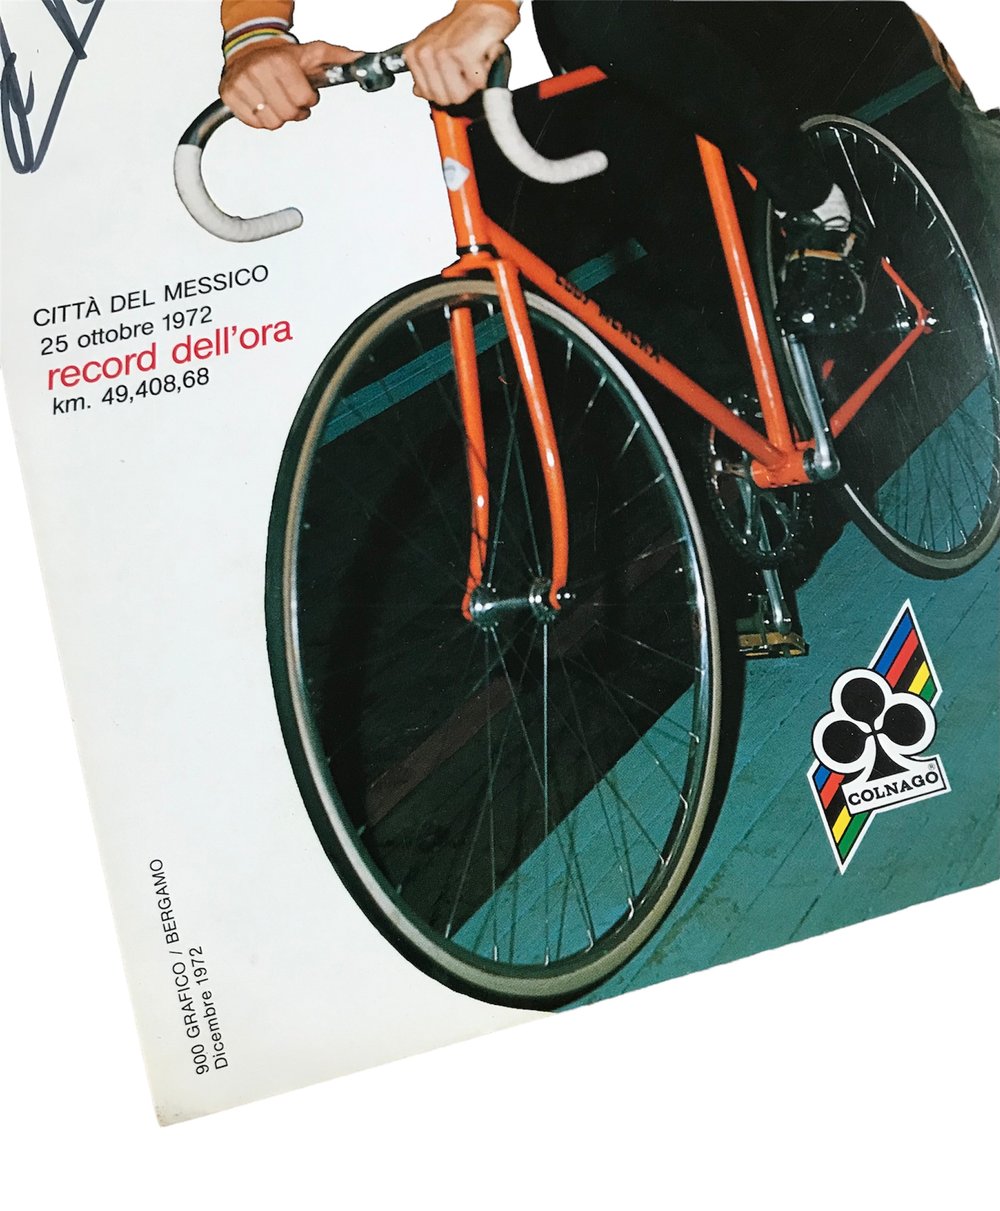 1972 ðŸ‡§ðŸ‡ª Official Colnago poster signed by Eddy Merckx